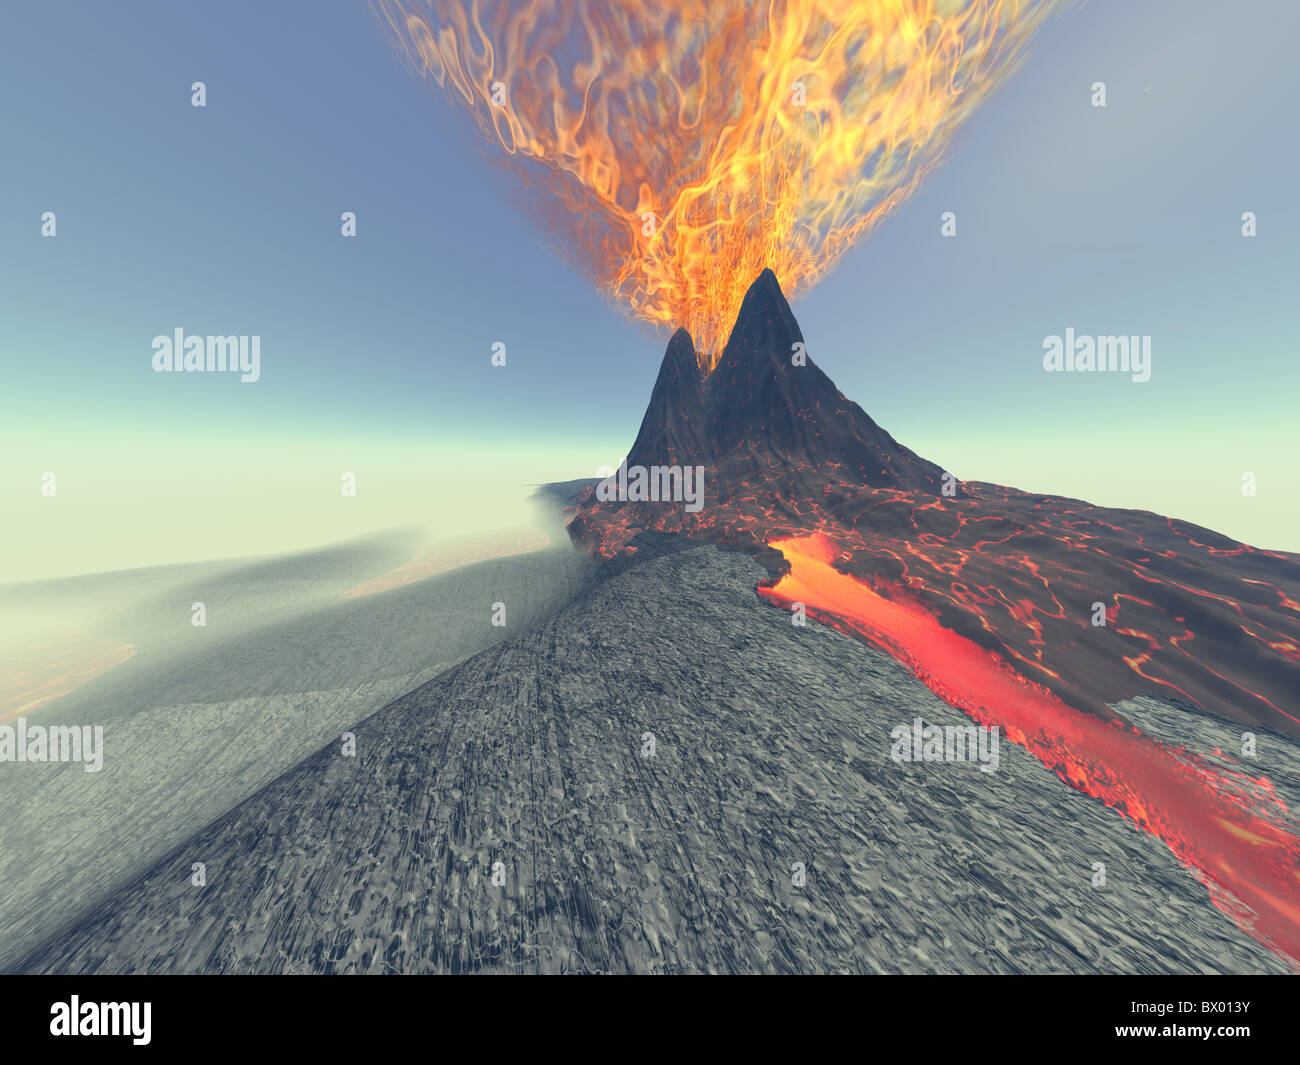 Vulcano - un vulcano prende vita con il fuoco, fumo e lava. Foto Stock